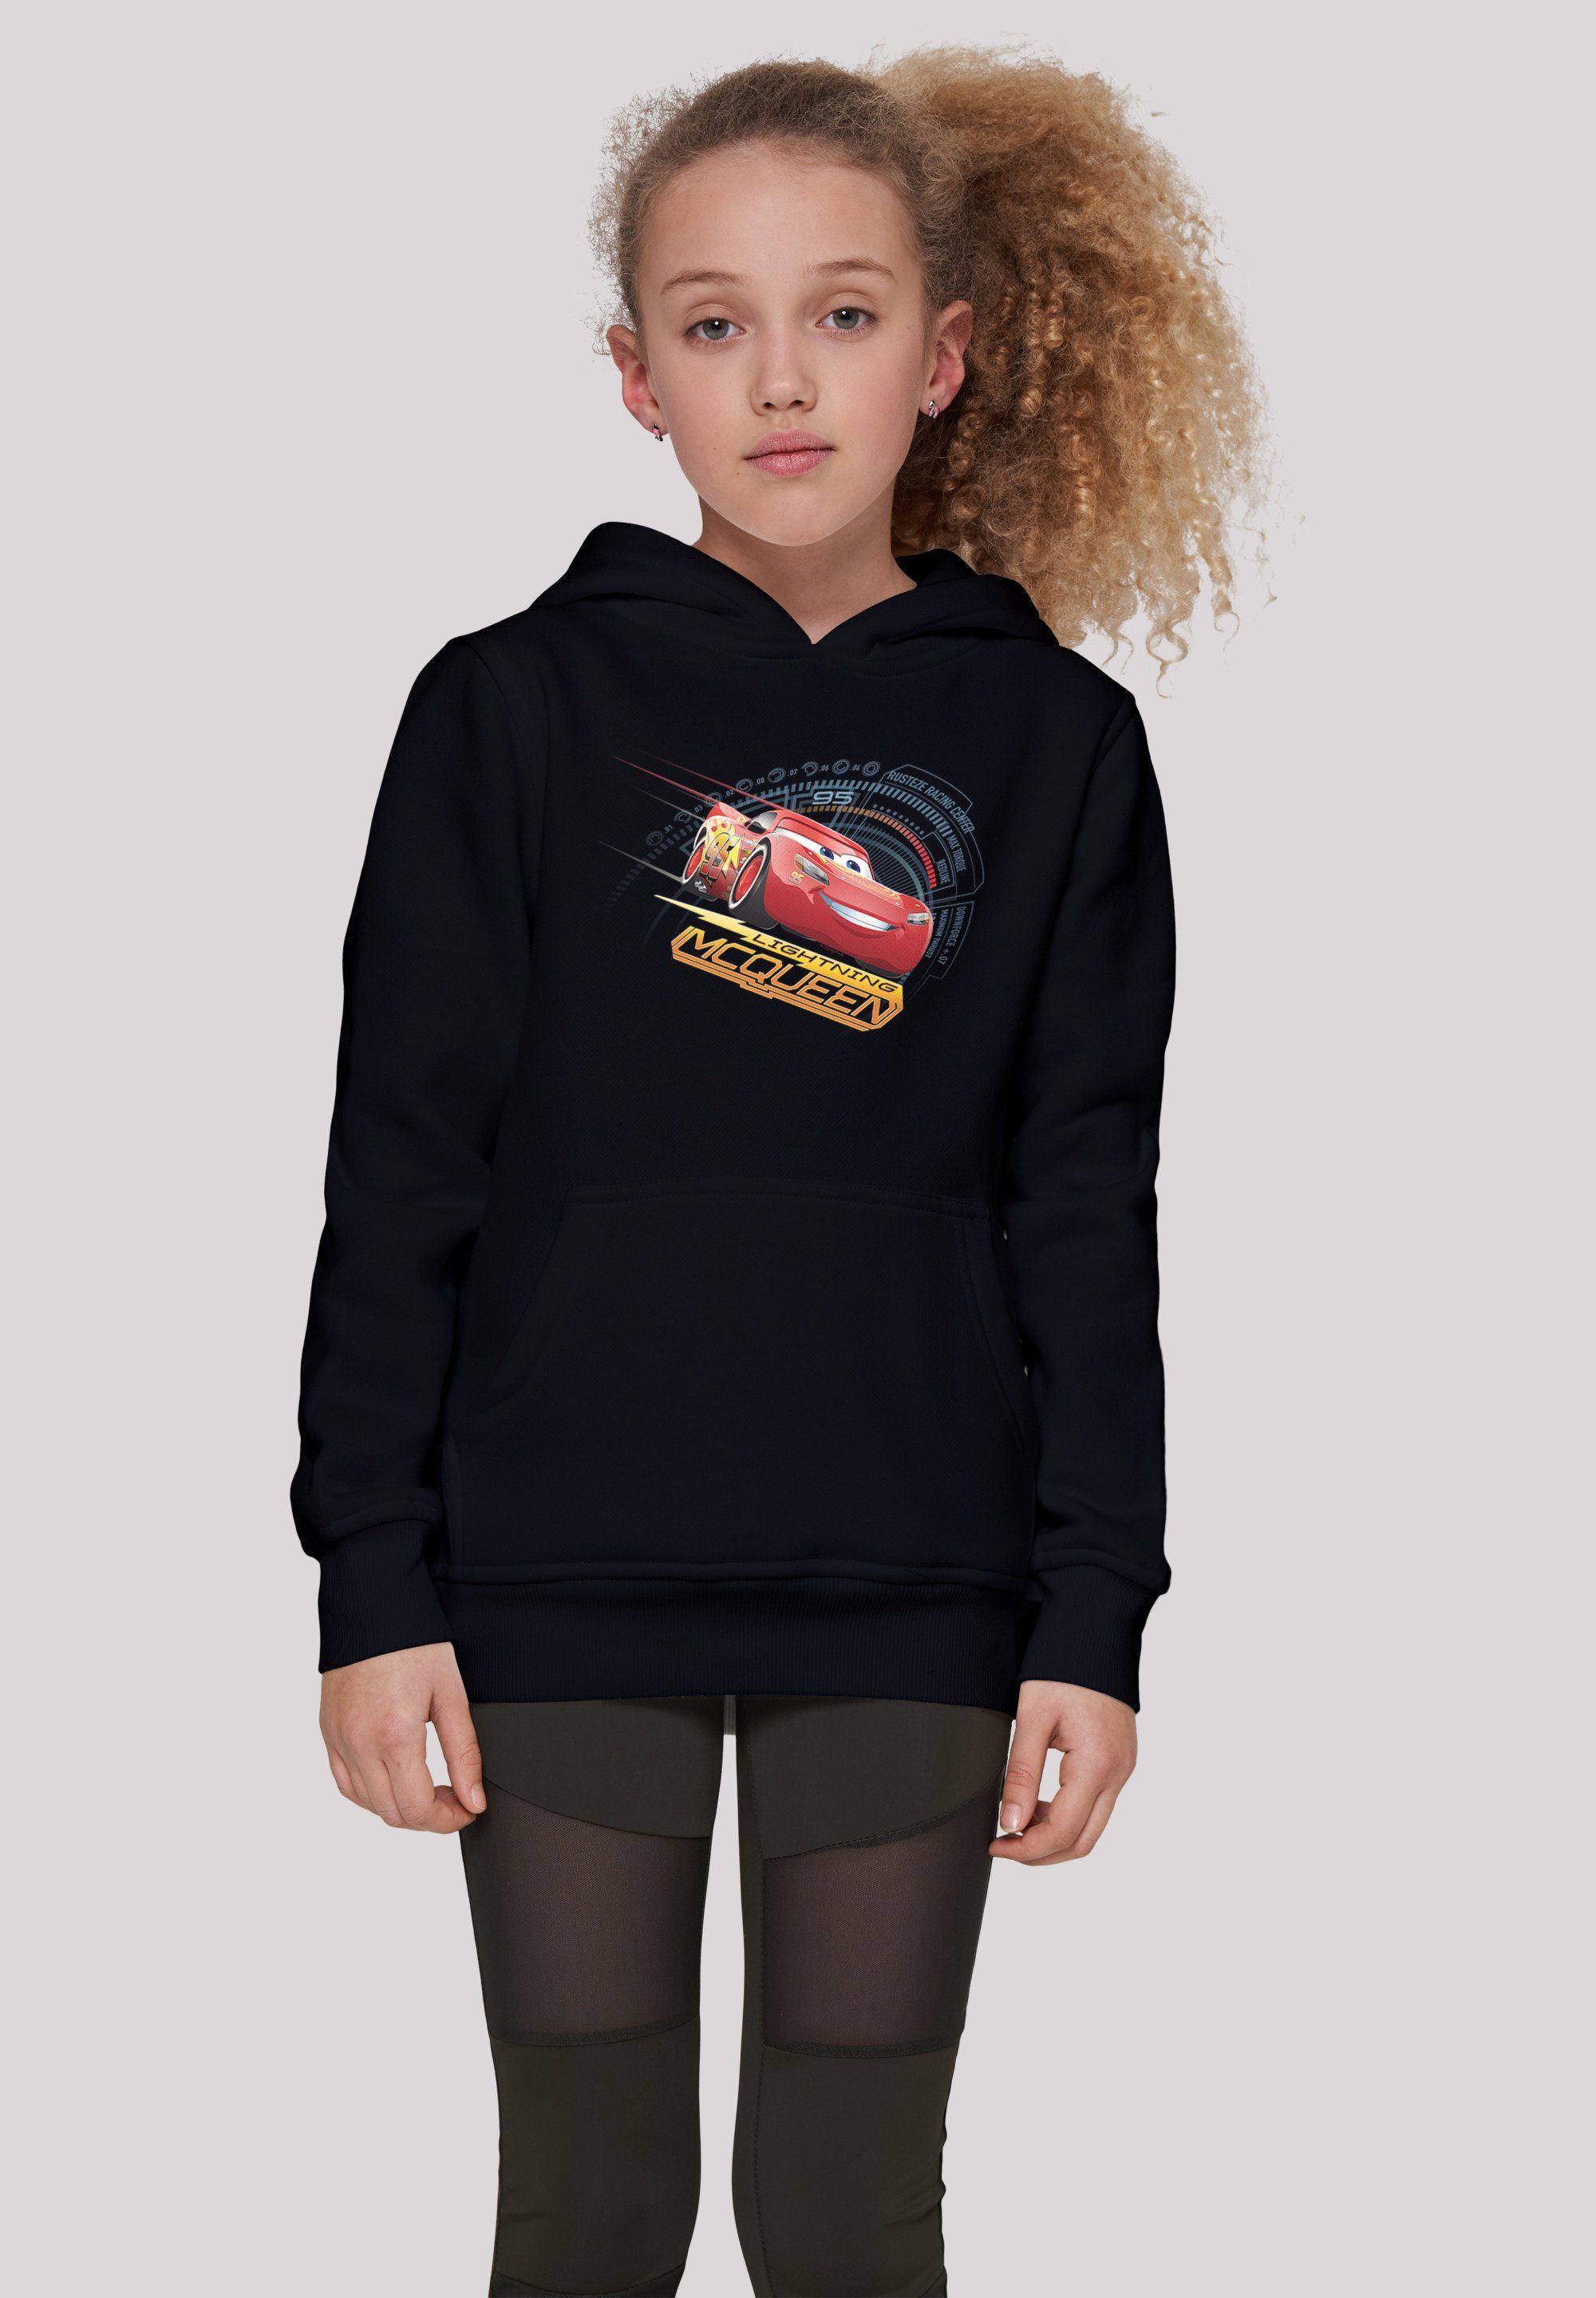 F4NT4STIC Sweatshirt Disney Cars Lightning McQueen Unisex Kinder,Premium Merch,Jungen,Mädchen,Bedruckt schwarz